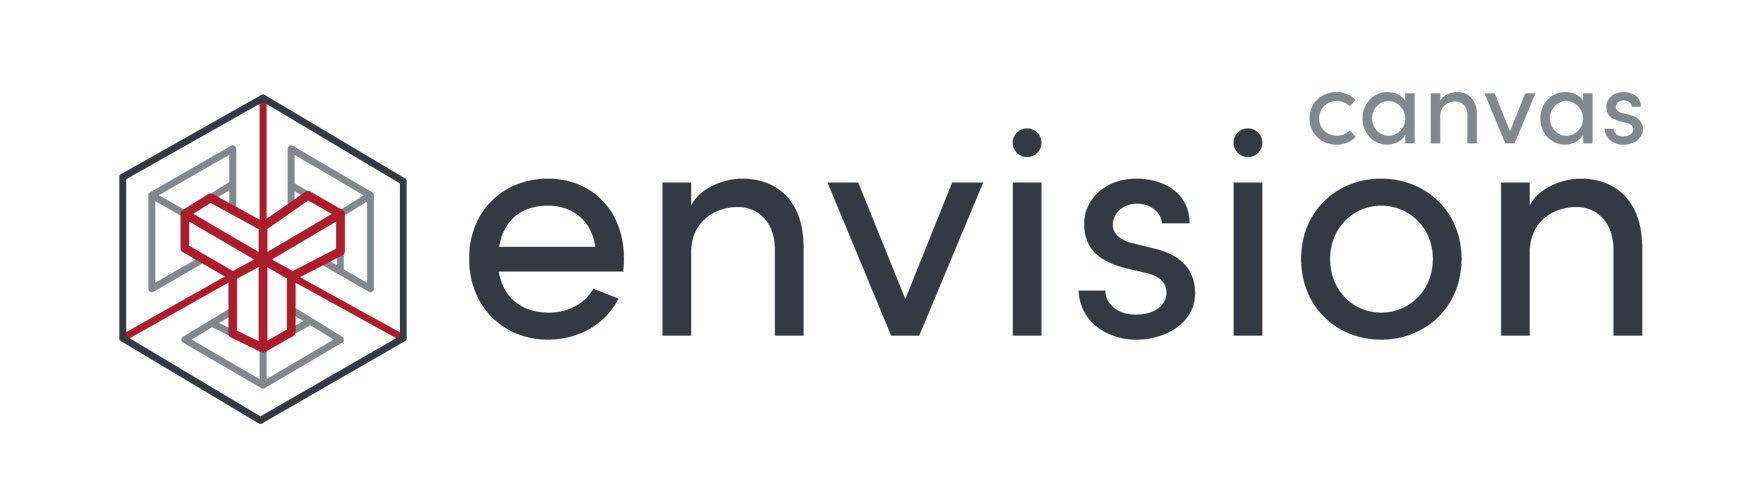 Canvas GFX Envision logo